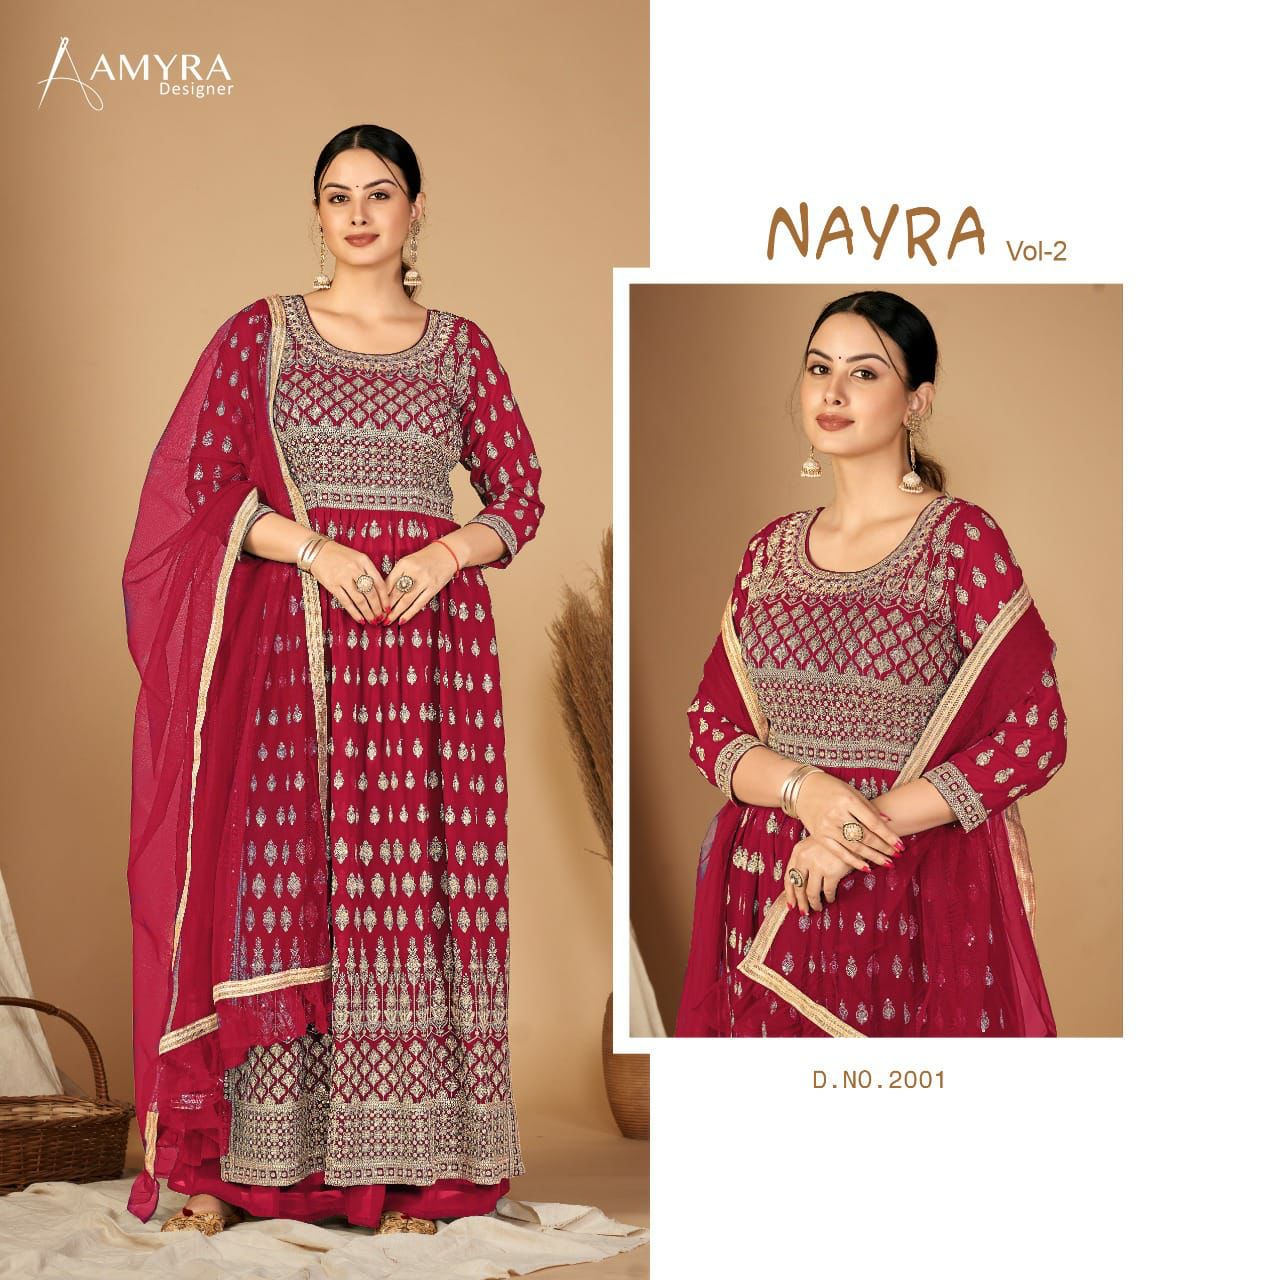 Amyra Nayra Vol 2 collection 1